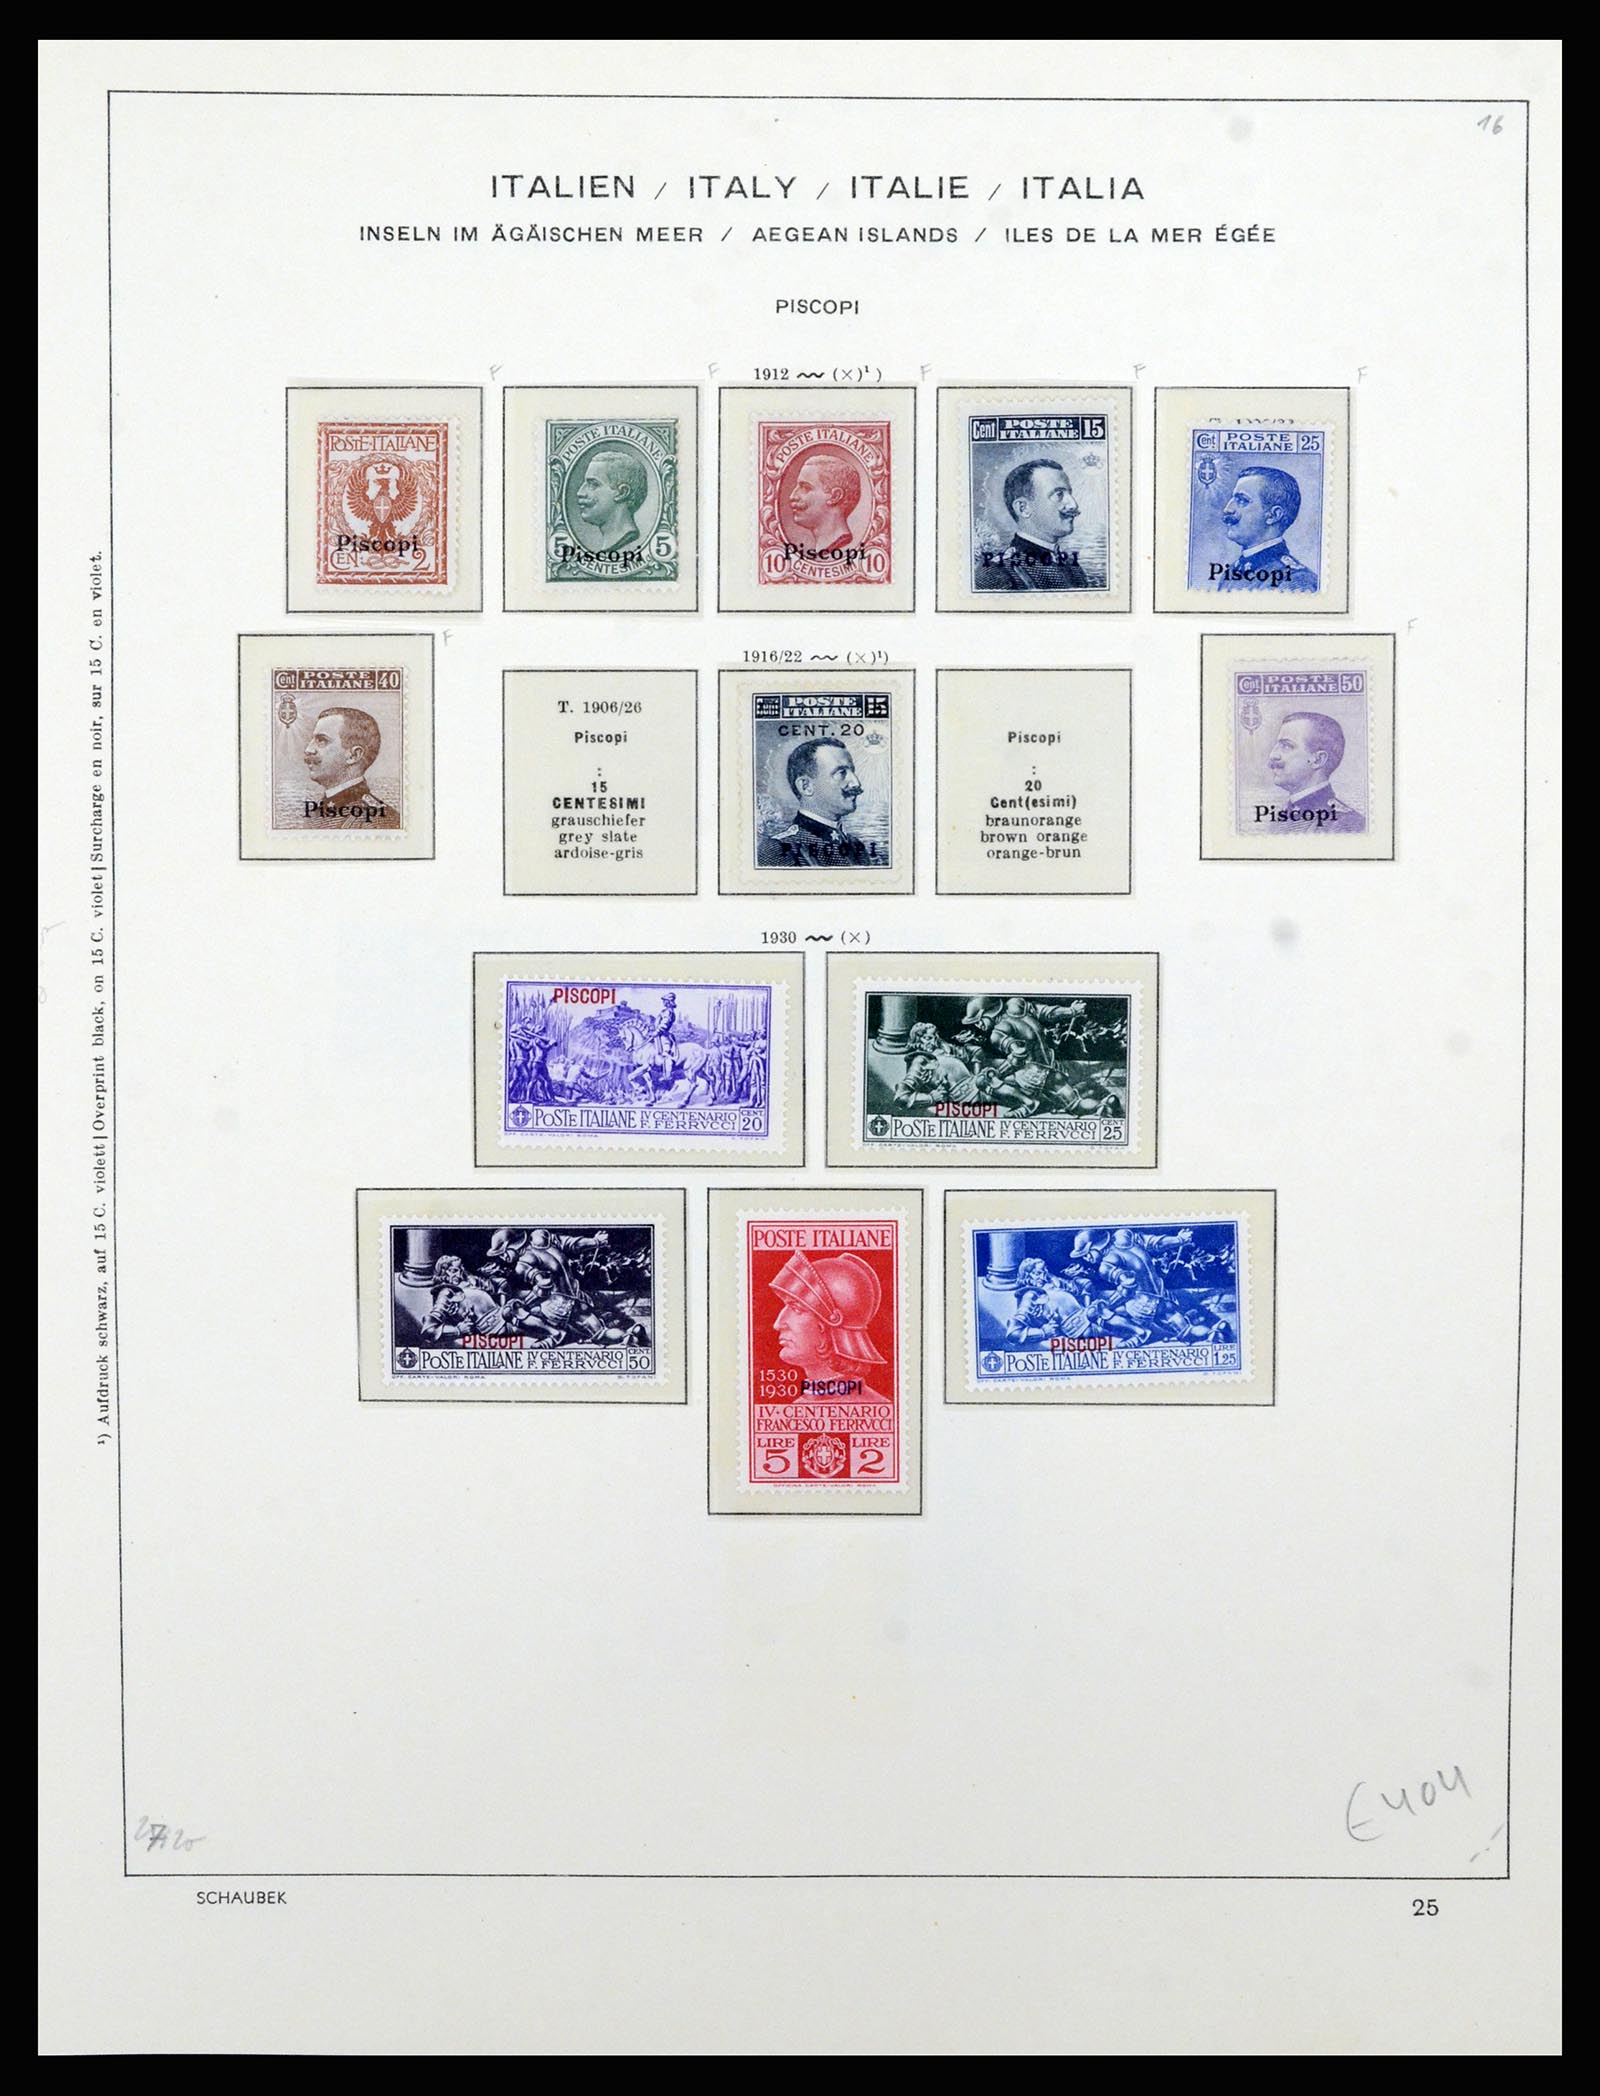 36577 051 - Stamp collection 36577 Italiaanse gebieden 1870-1940.